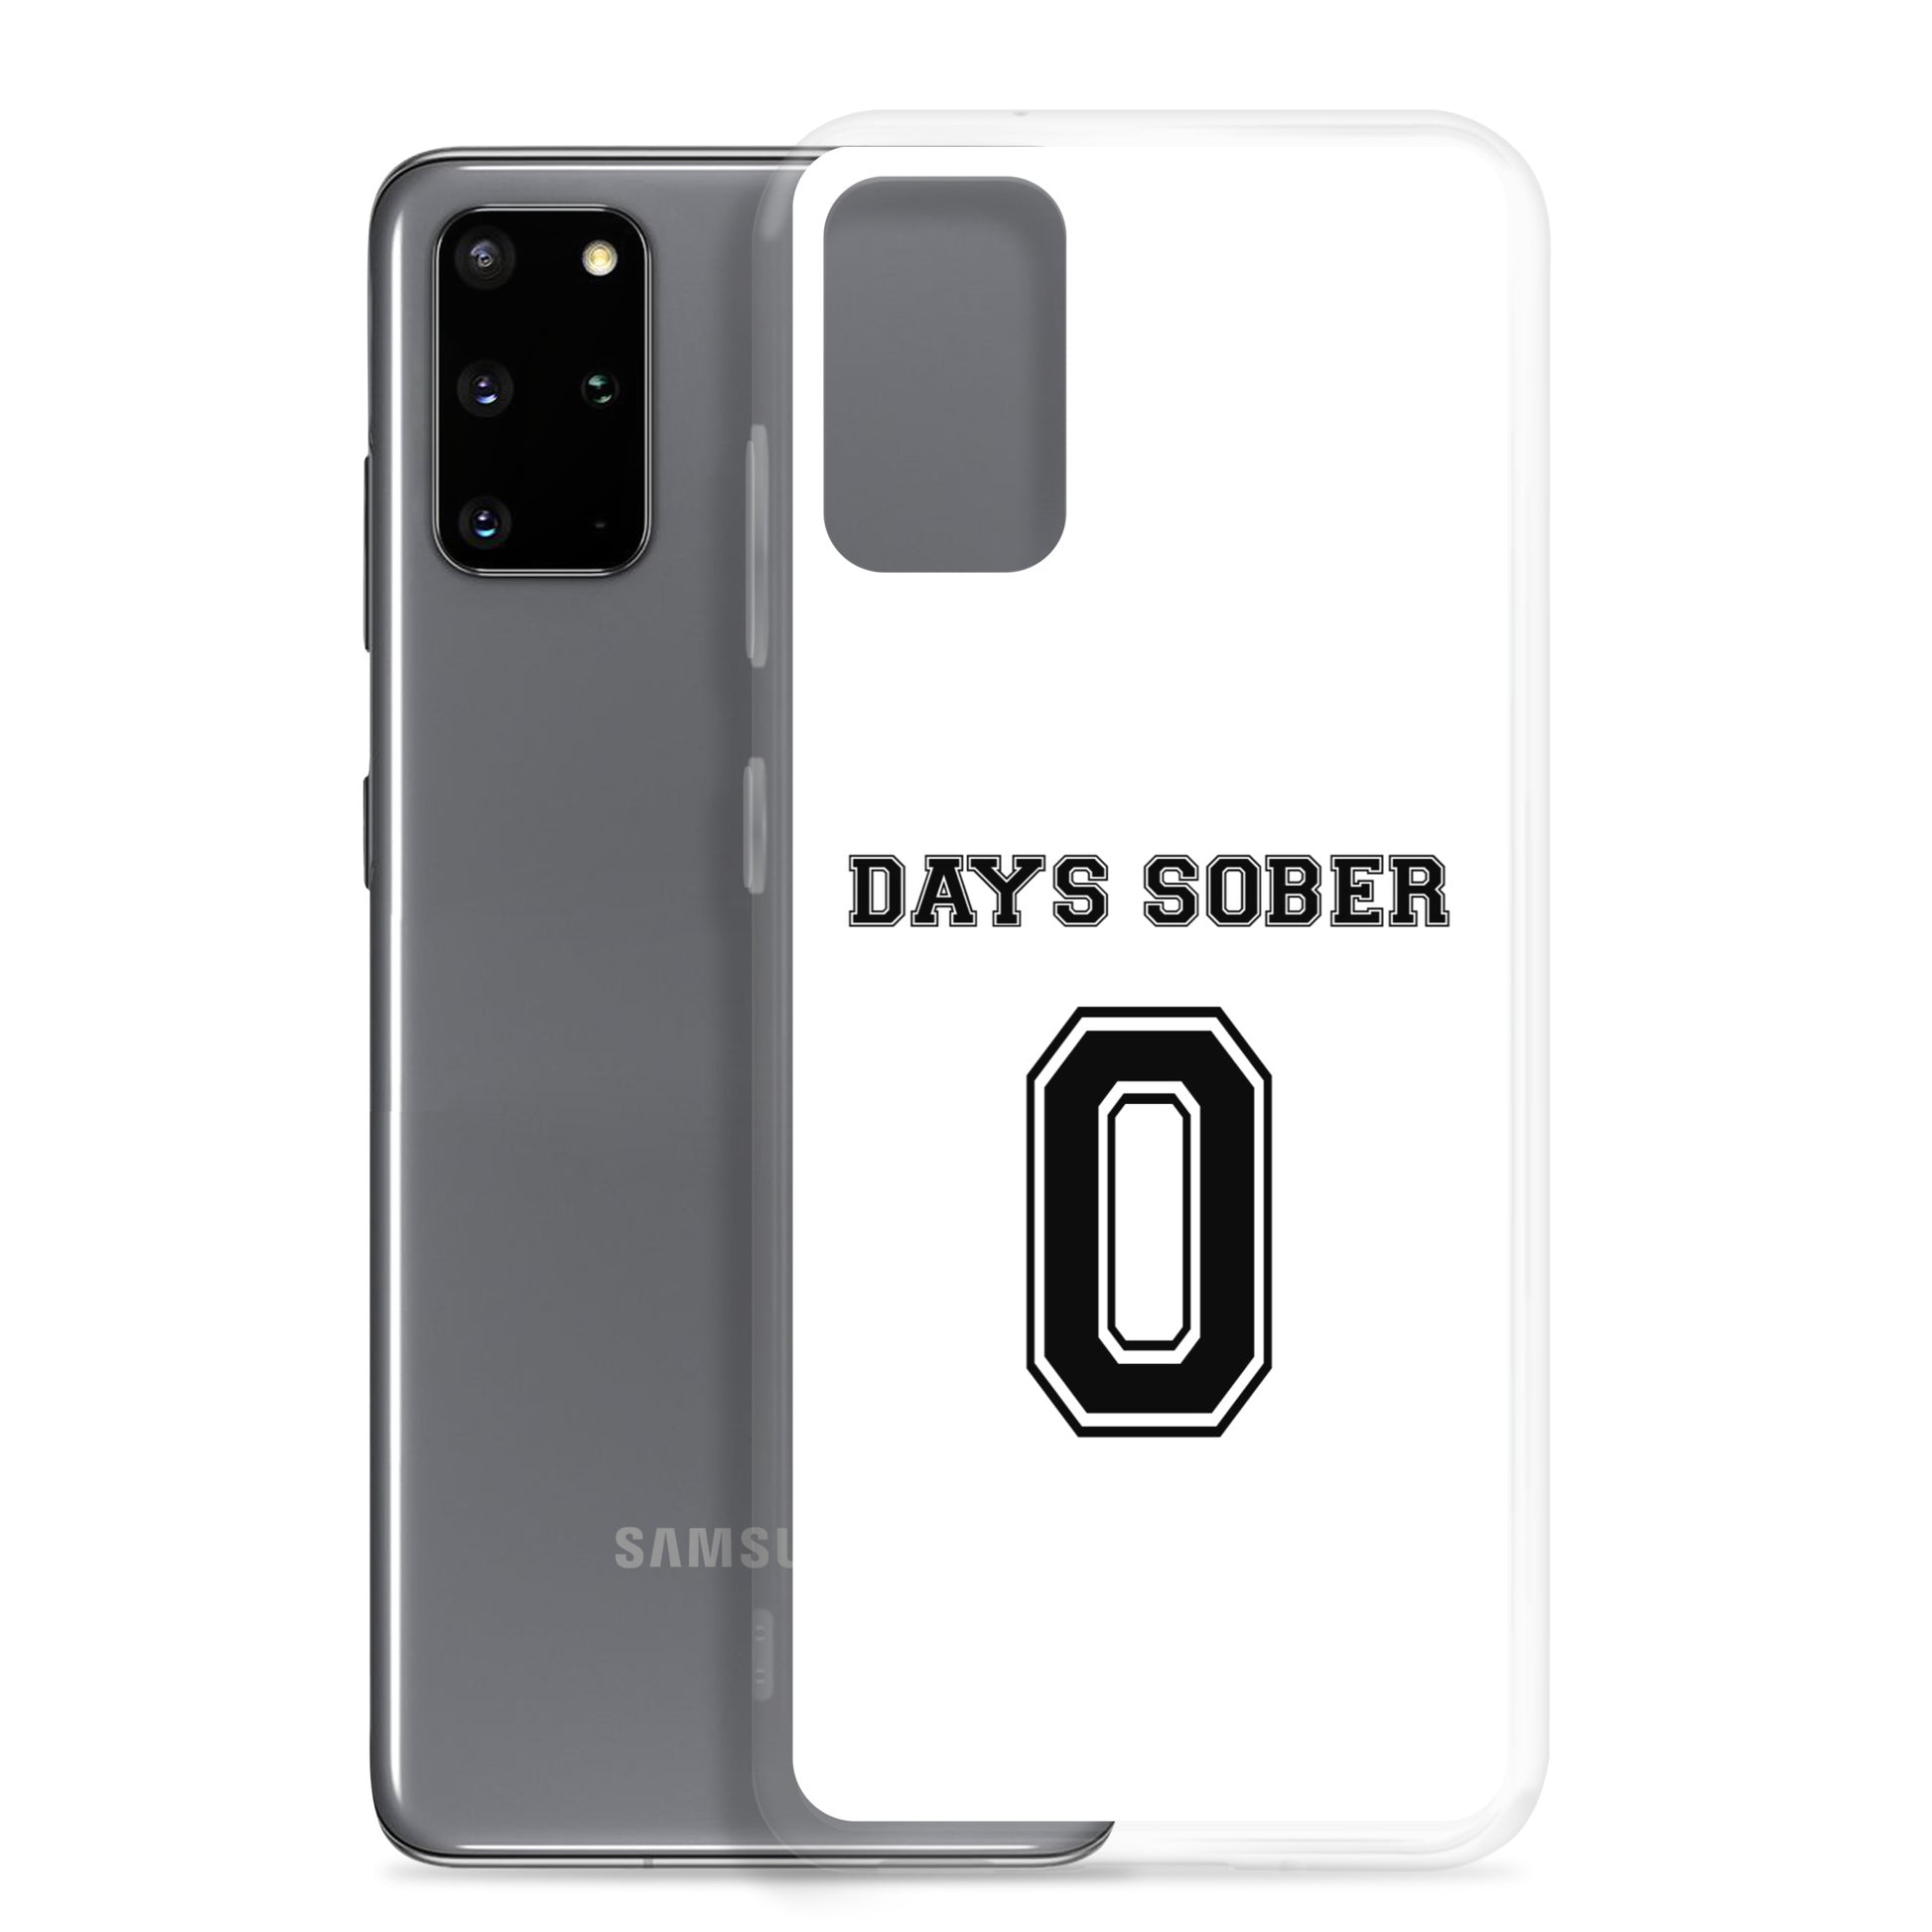 Coque Samsung Days sober 0 Sedurro